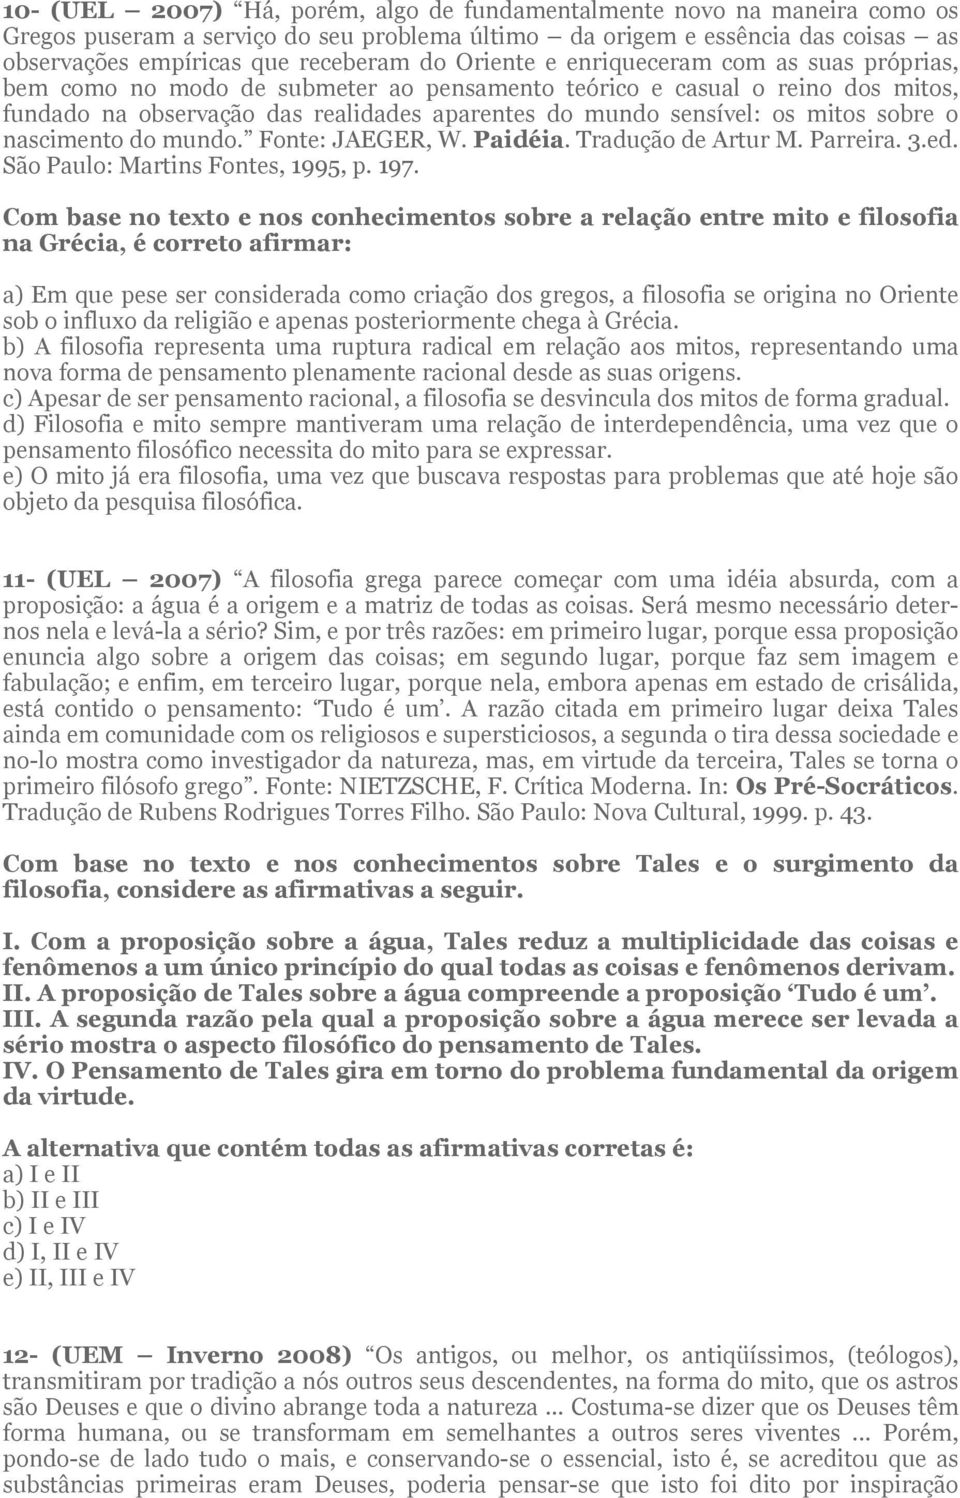 sobre o nascimento do mundo. Fonte: JAEGER, W. Paidéia. Tradução de Artur M. Parreira. 3.ed. São Paulo: Martins Fontes, 1995, p. 197.